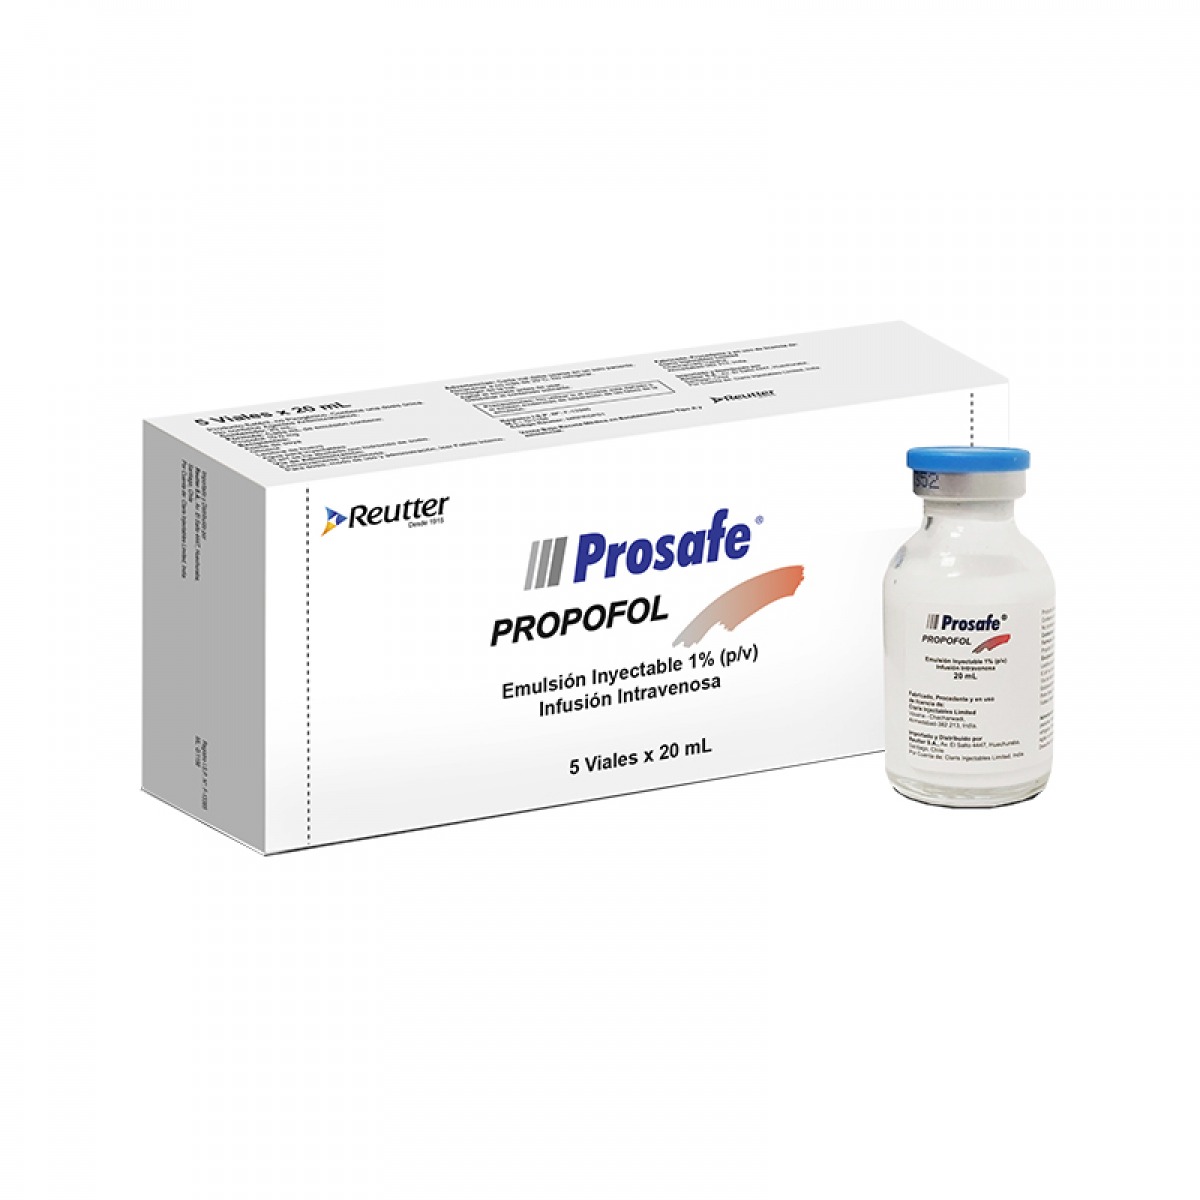 PROSAFE - Propofol